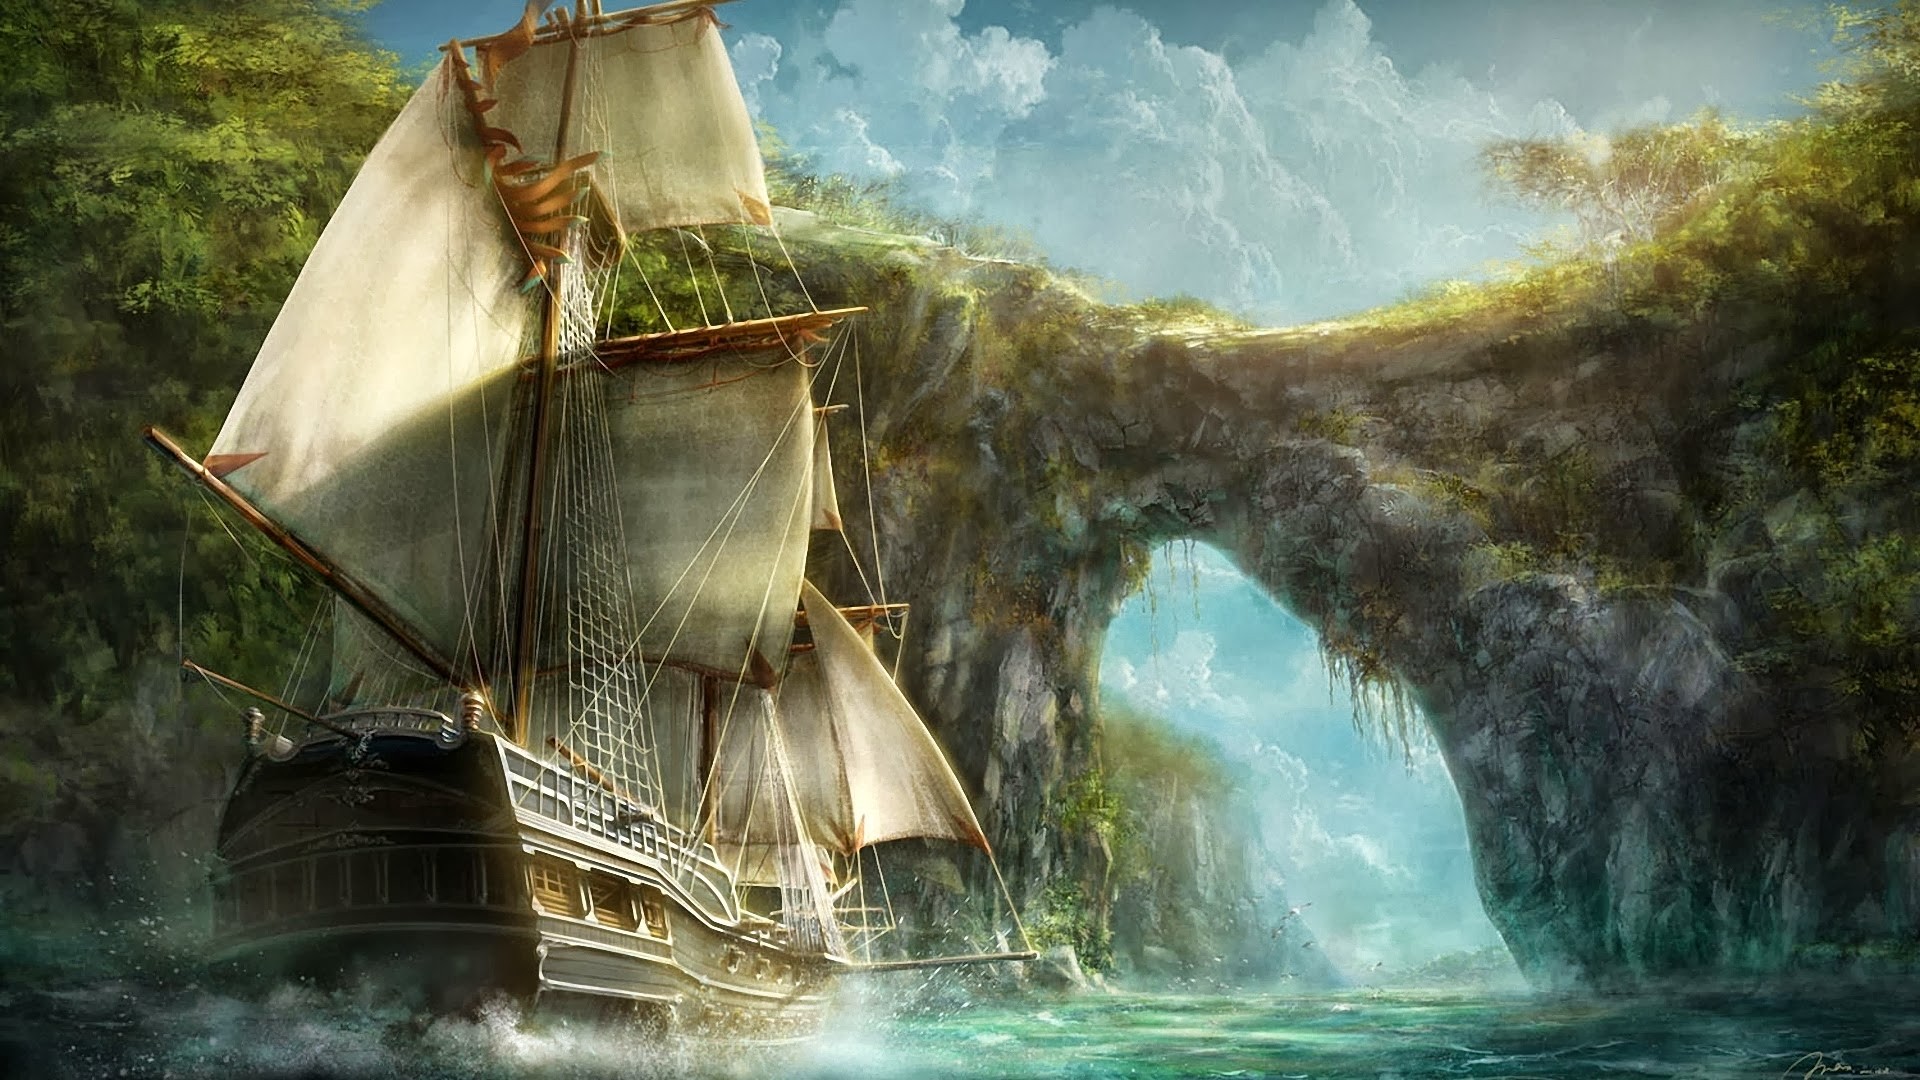 General 1920x1080 fantasy art ship nature sailing ship rigging (ship) vehicle digital art